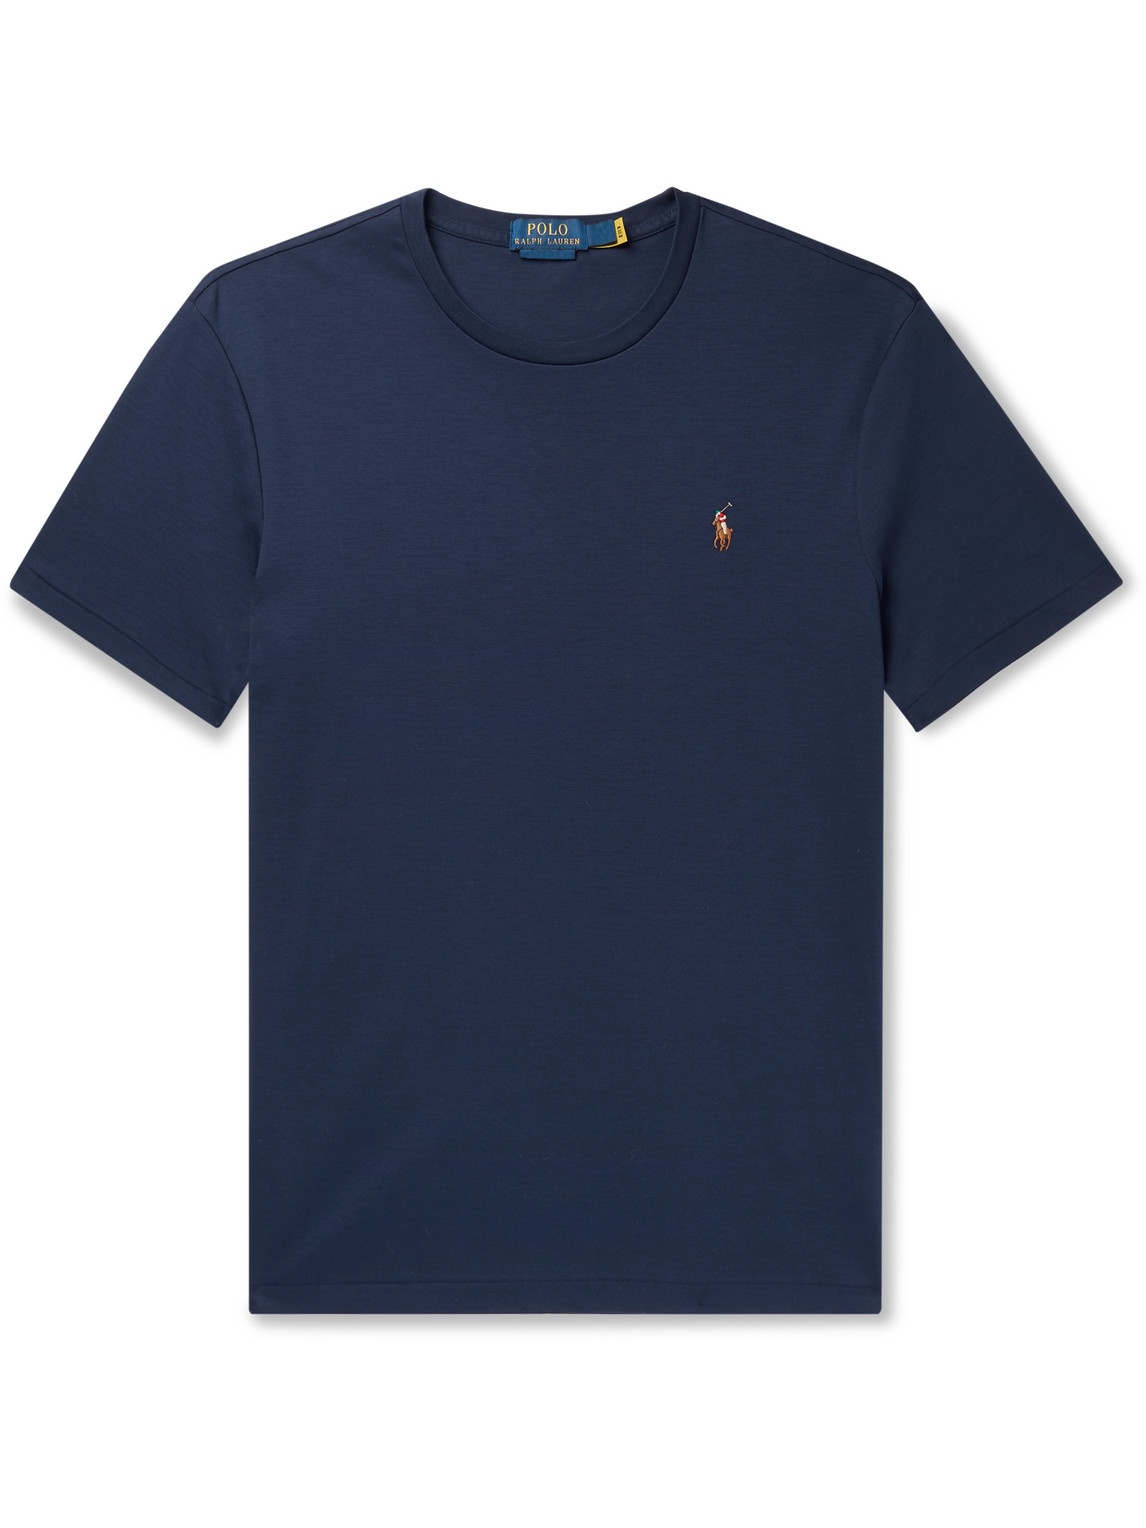 Polo Ralph Lauren - Cotton-Jersey T-Shirt - Men - Blue - XS pour hommes